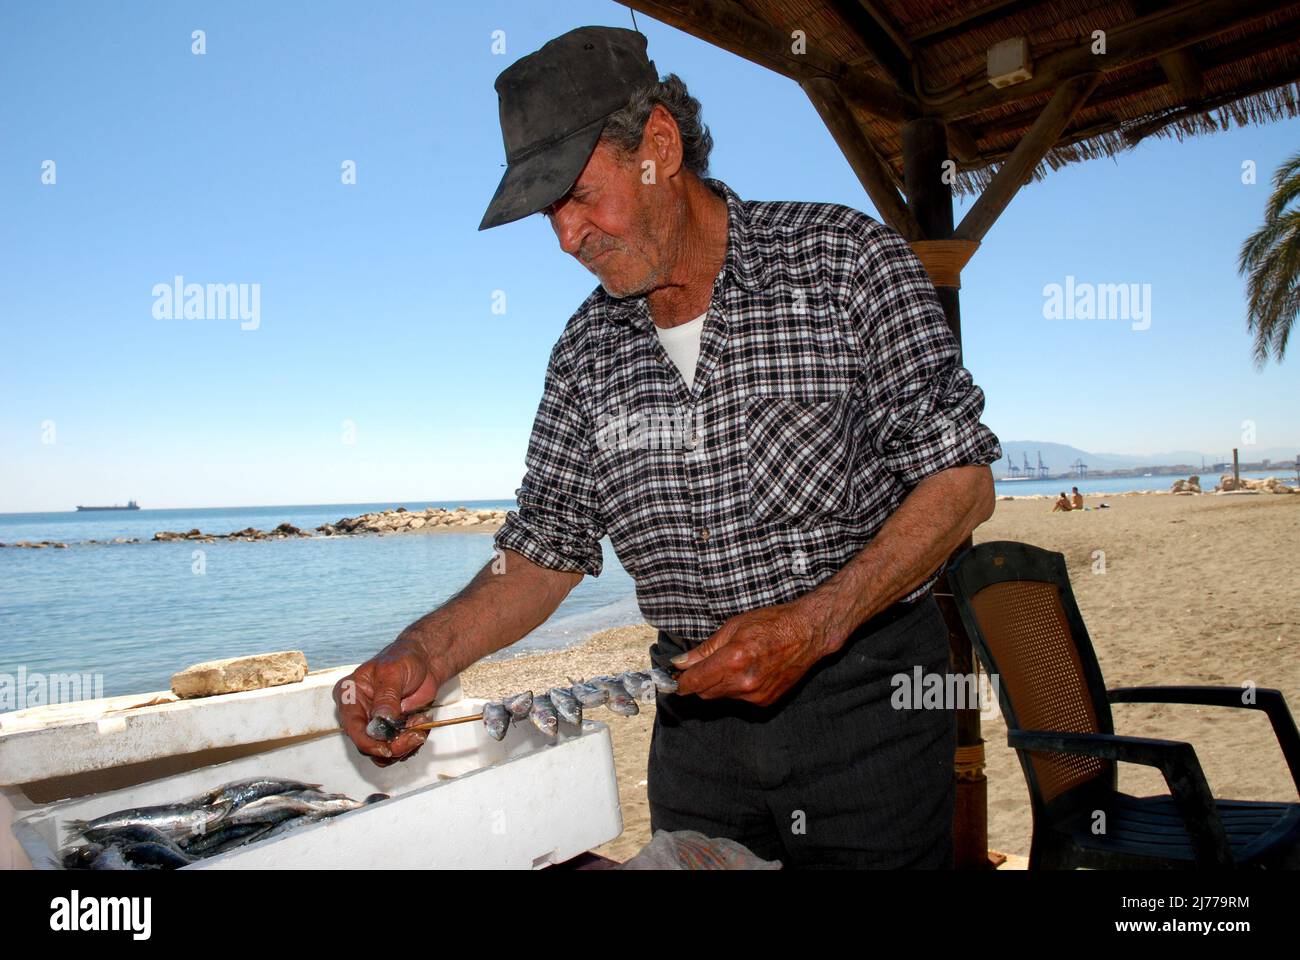 El sr Adolfo Suarez experto en Espetos del Restaurante El Cabra, ubicado junto al mar, en el comienzo del popular Paseo Marítimo de Pedregalejo, Malag Stock Photo